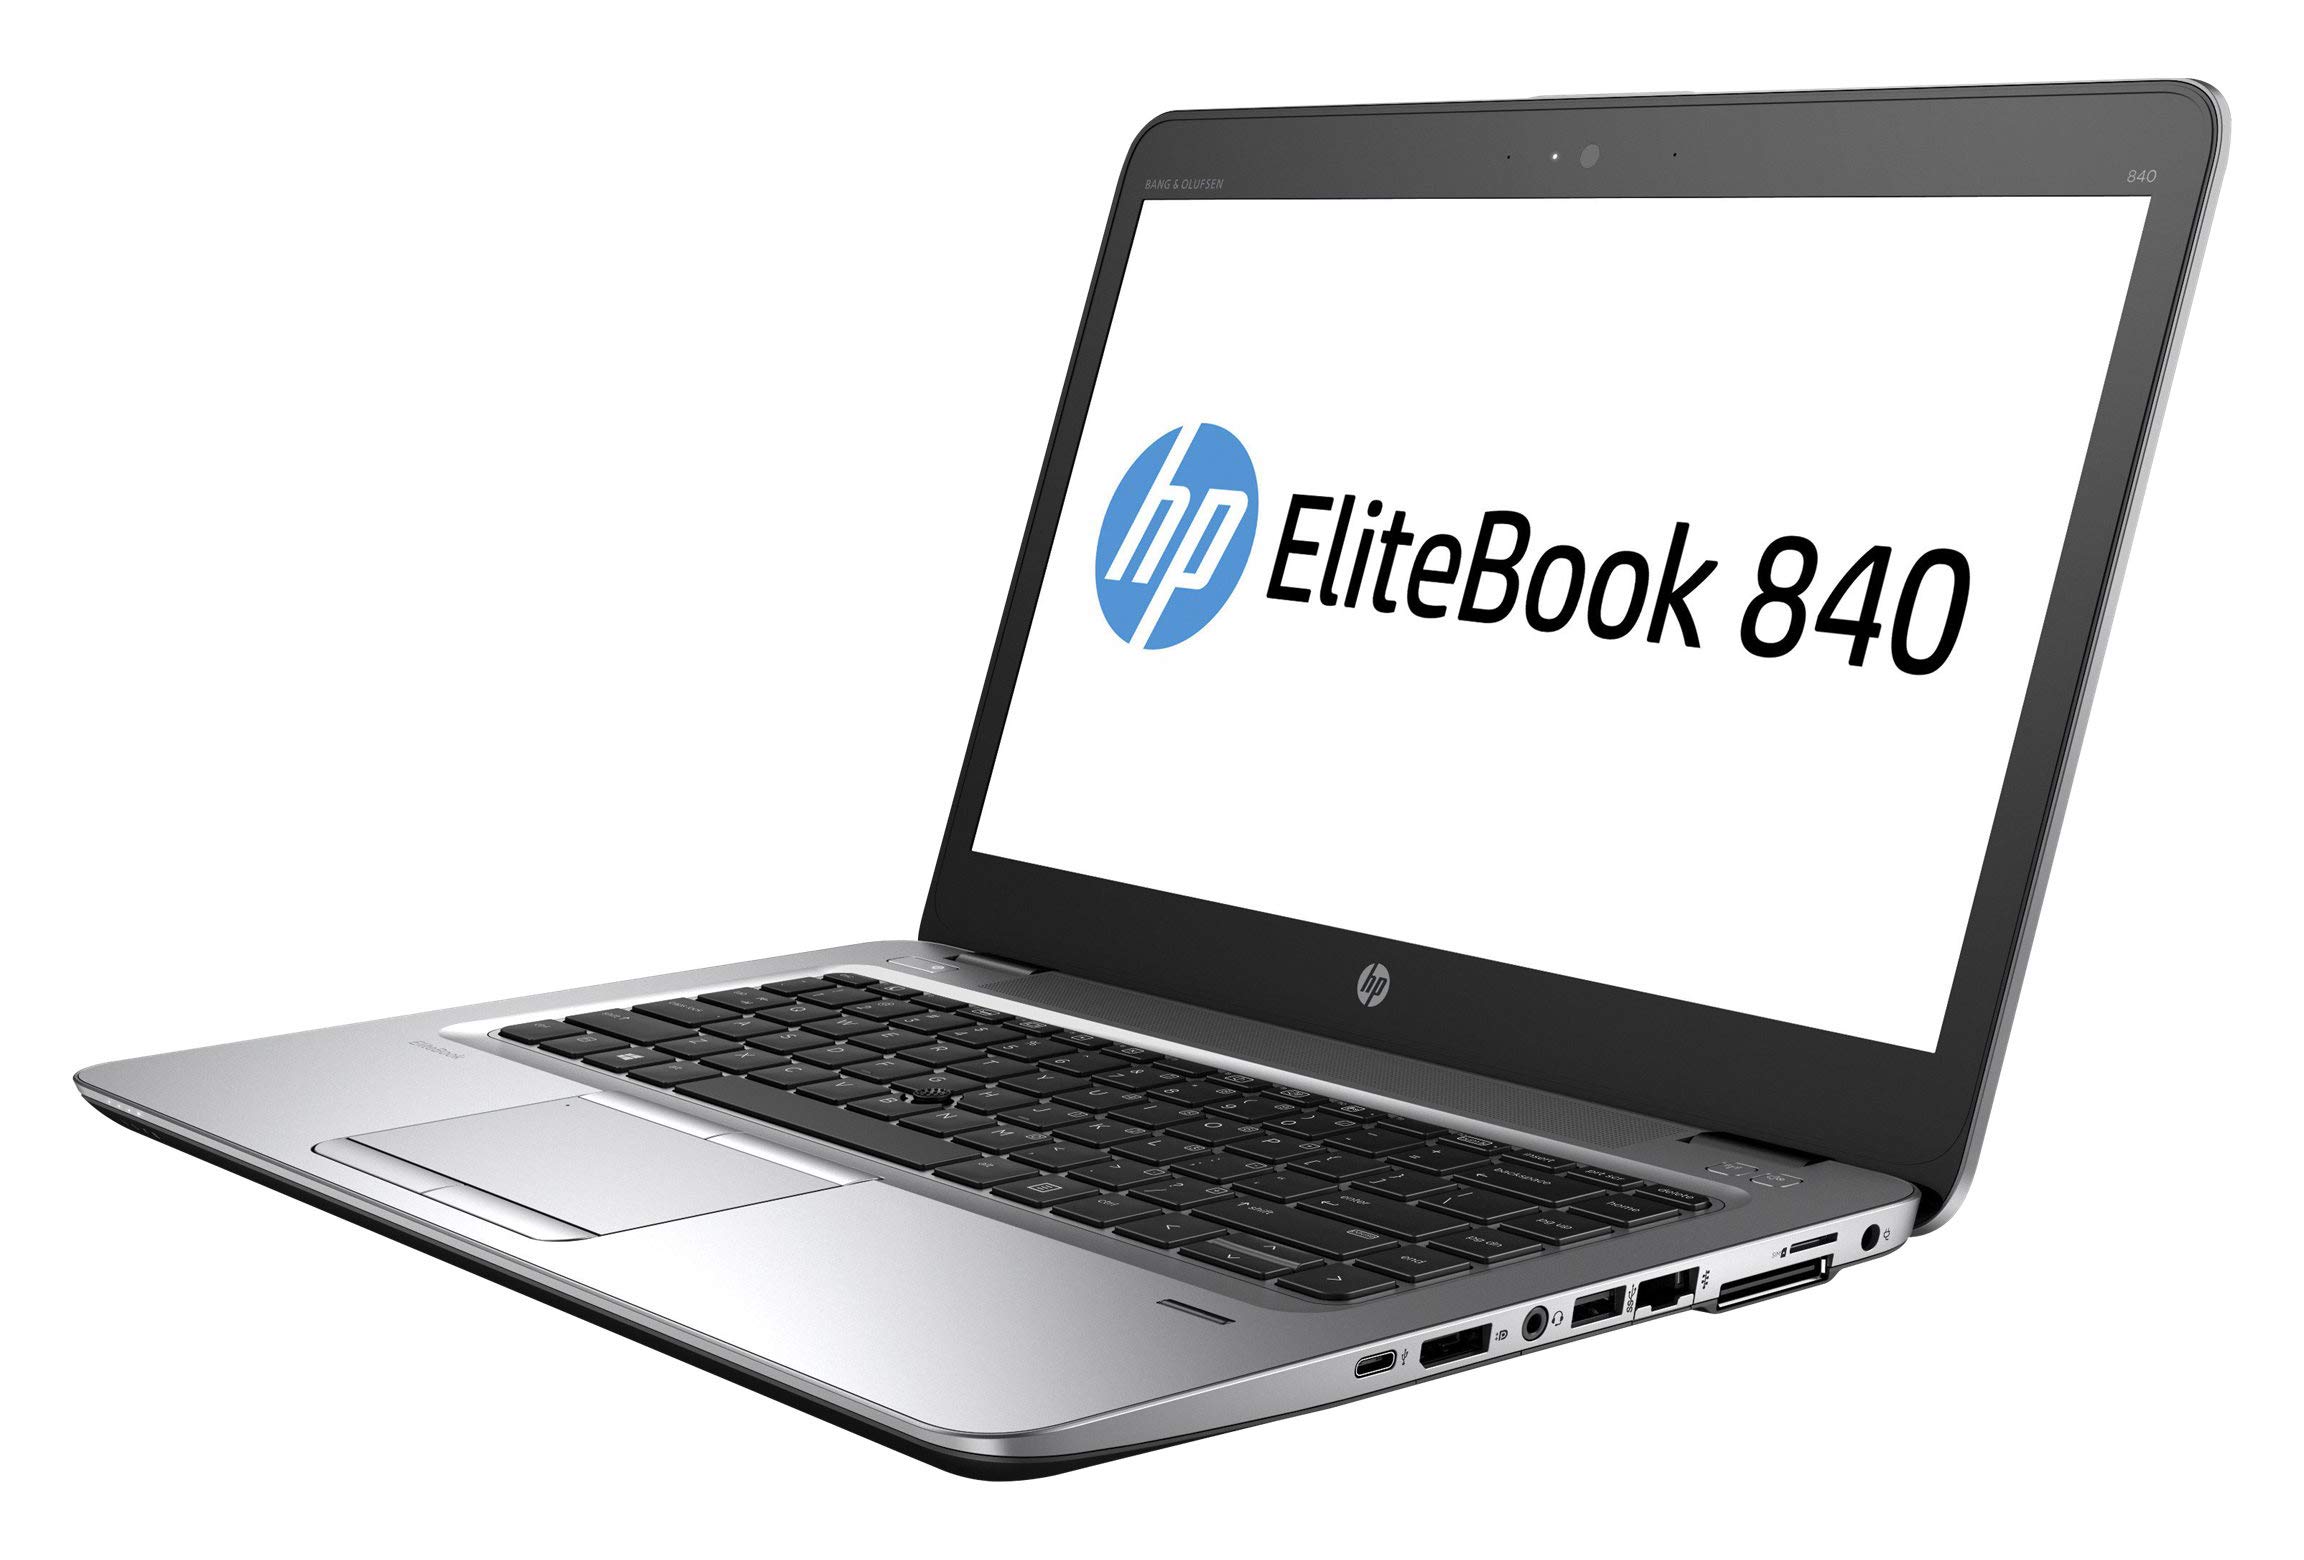 hp elitebook 840 g3 intel core i5 6th generation 16gb ddr4 ram 512gb ssd hard drive 14 fhd windows 10 pro 64 bit silver laptop renewed 639c6ab37f60c